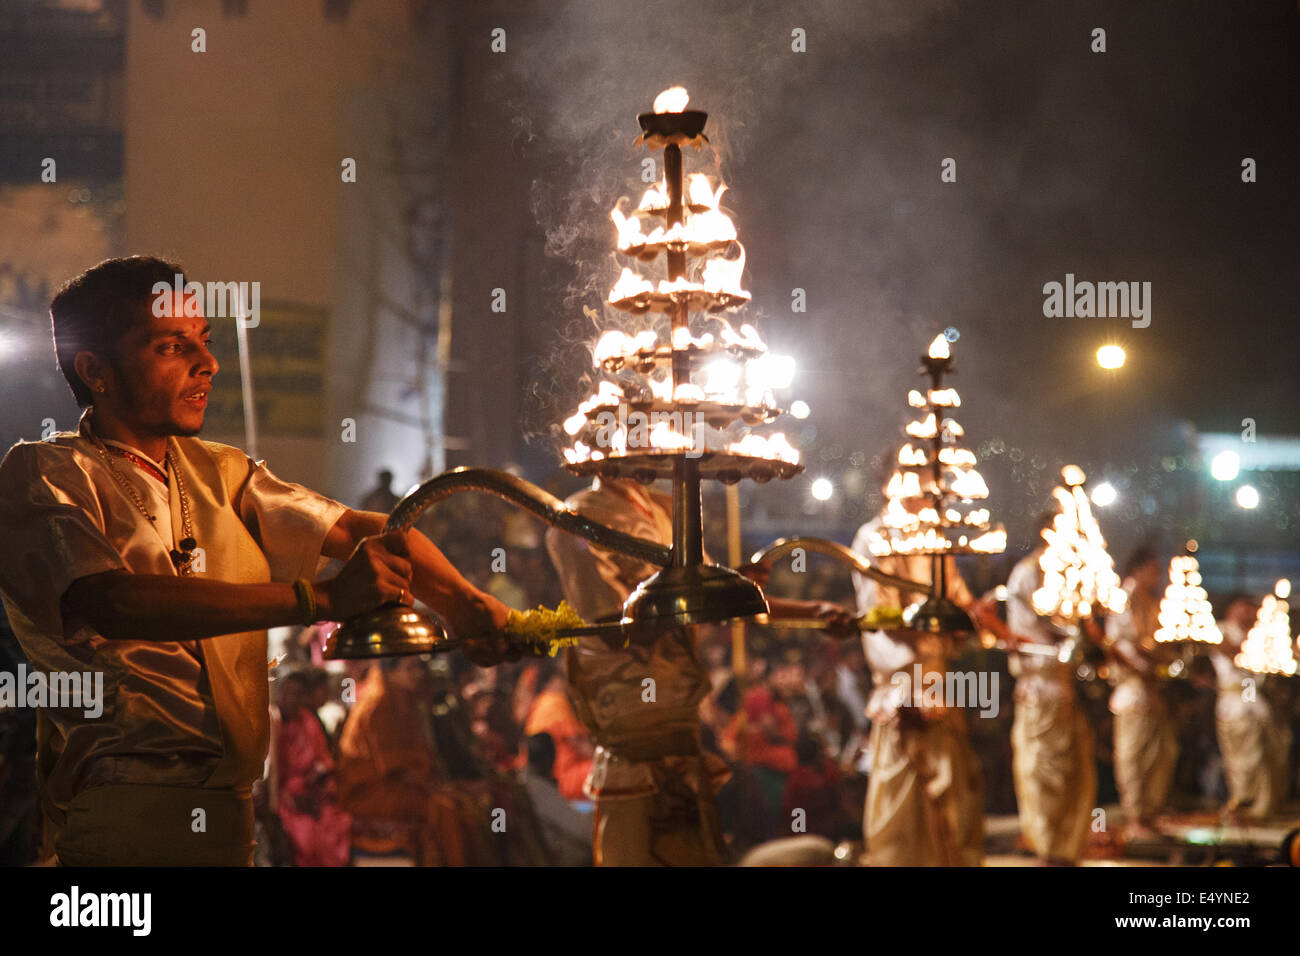 Noche Ganga Aarti (aarthi) religiosa hindú y ceremonia ritual espiritual con el fuego y el humo ofrendas en Varanasi, India Foto de stock